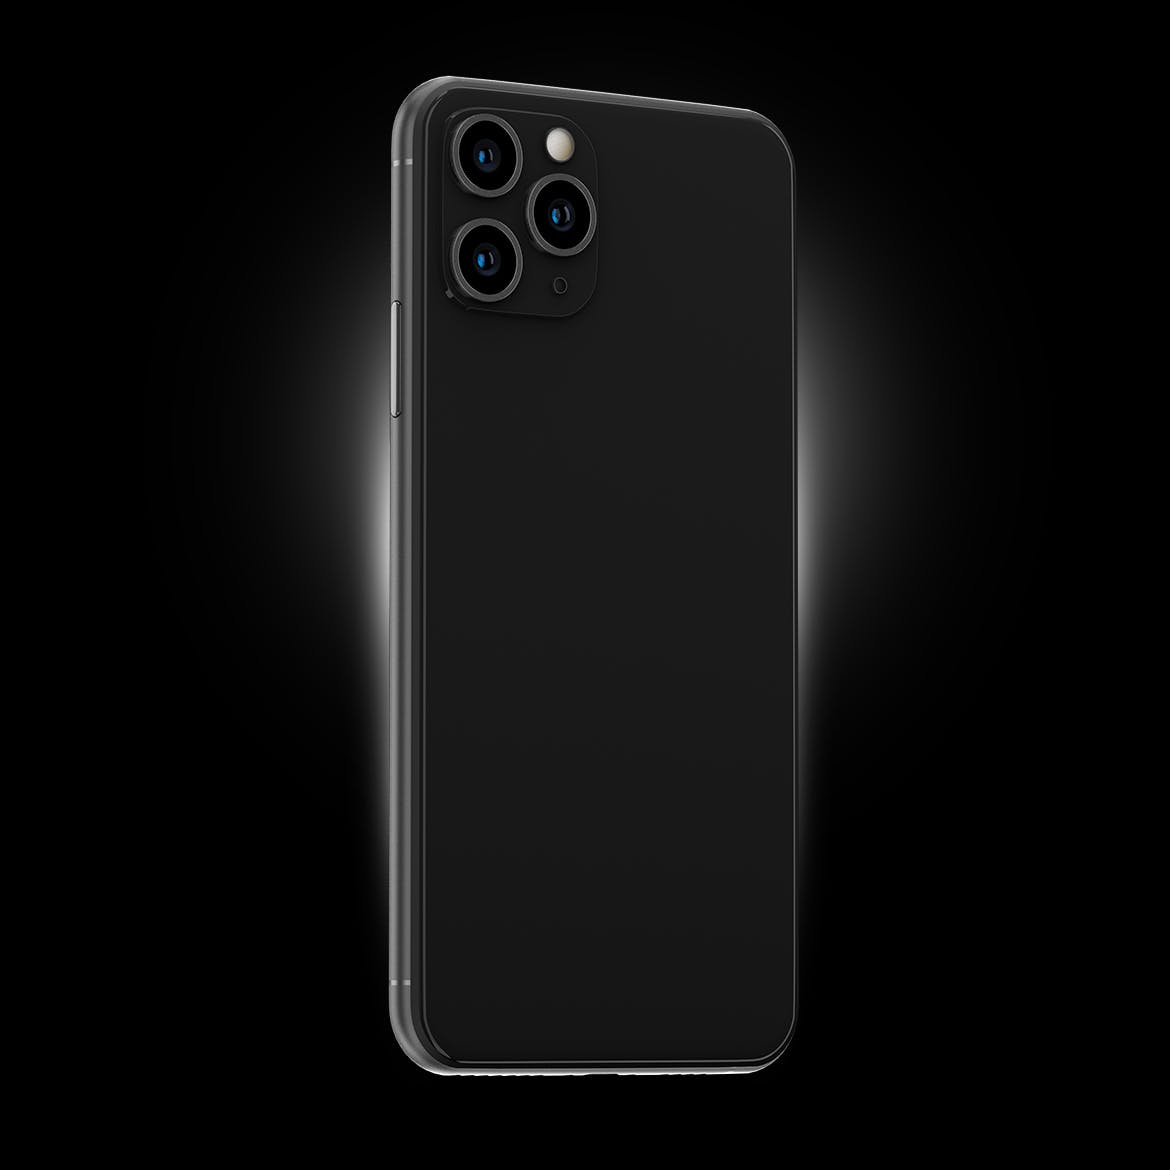 黑色iPhone 11 Pro Max智能手机APP设计预览蚂蚁素材精选样机 Phone 11 Black PSD Mockups插图(3)